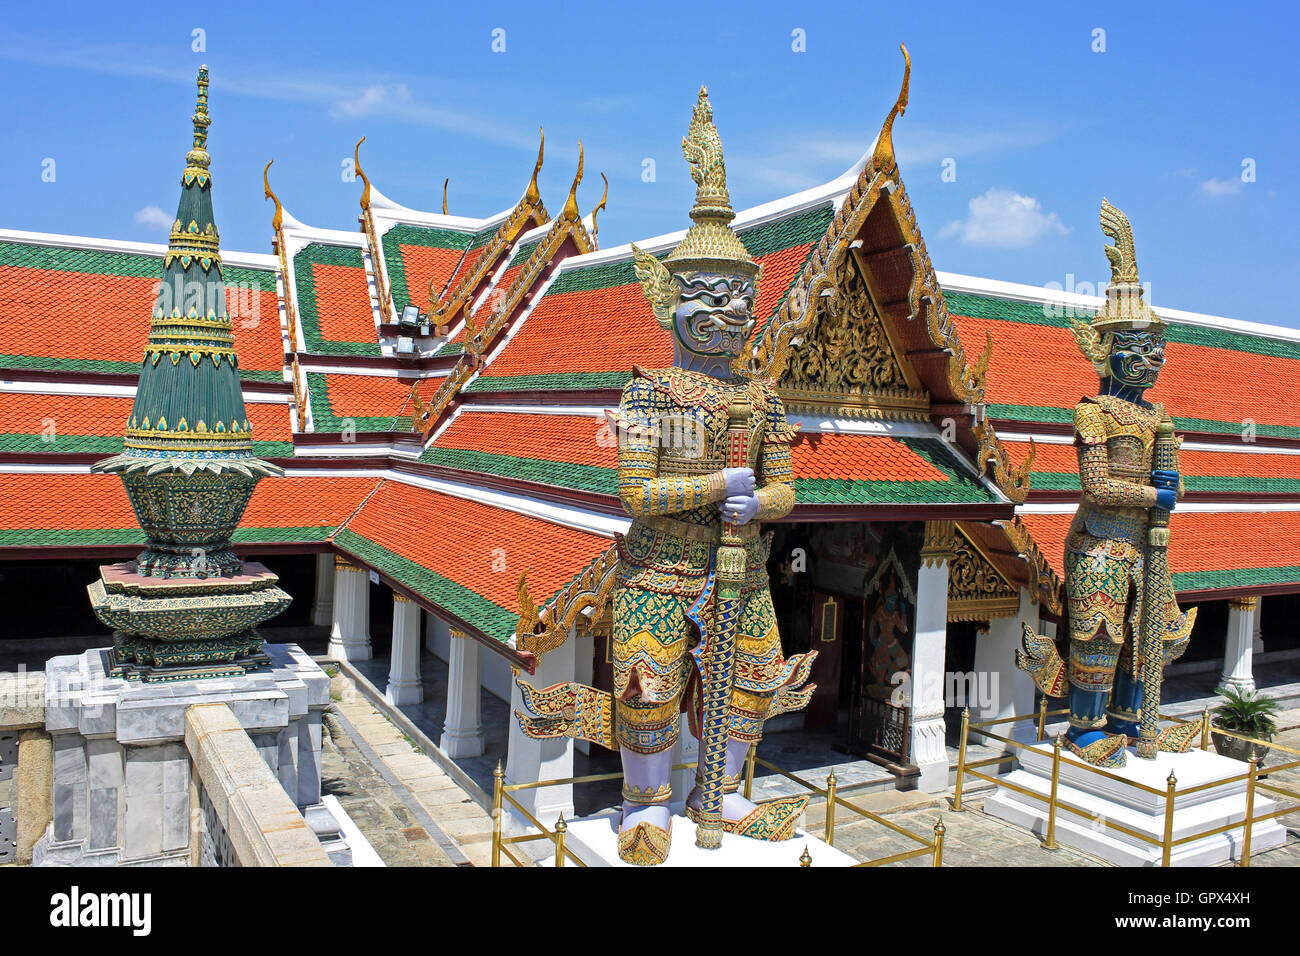 La porta di Wat Phra Kaew è sorvegliata da un paio di statue di yakshas, giganti mitici che misurano 5 metri (16 piedi) di altezza. Grand Palace Bangkok Thailandia Foto Stock